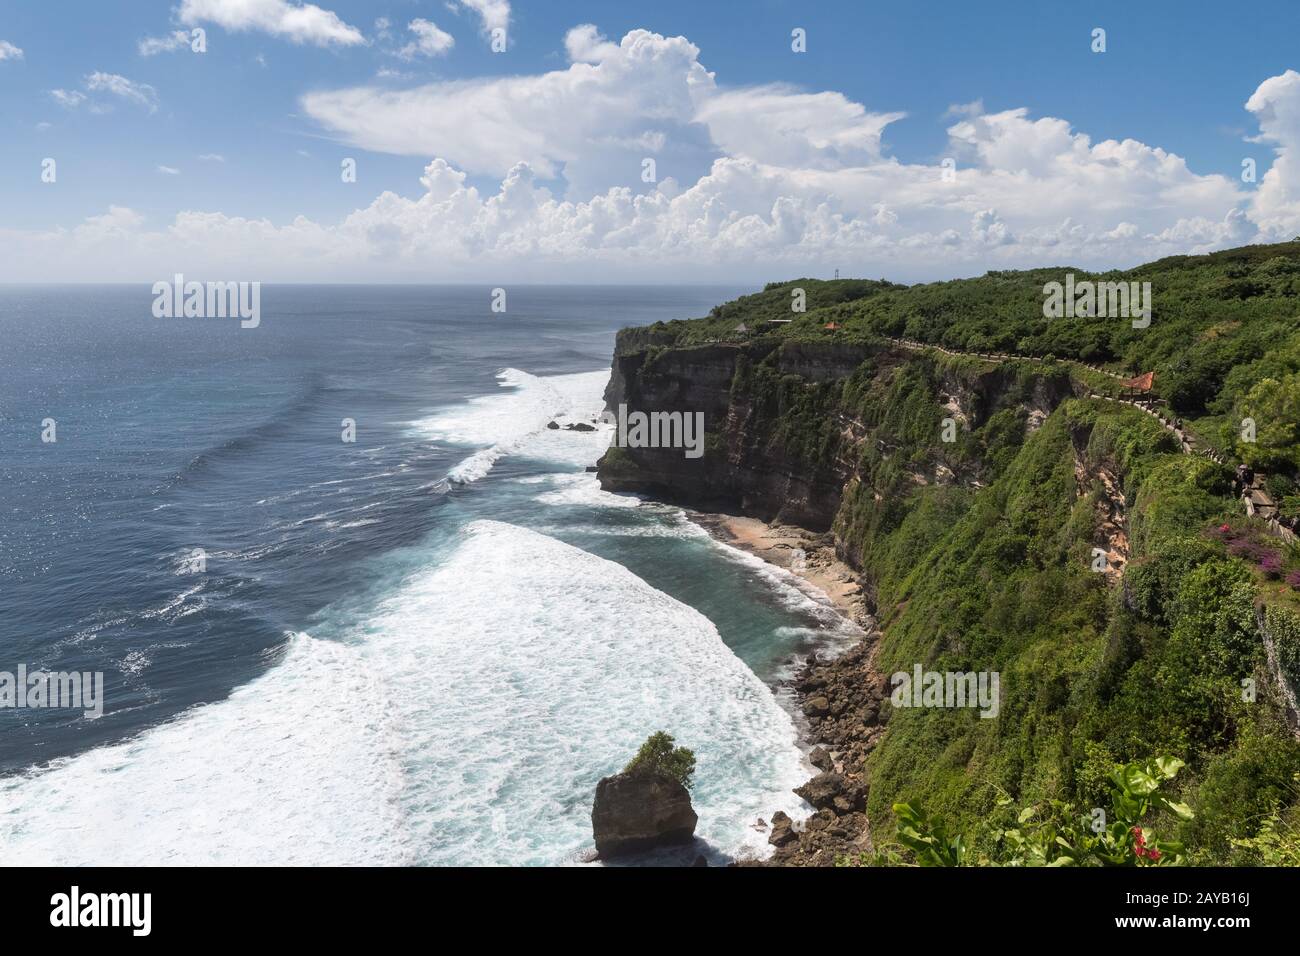 bali uluwatu cliff with blue sea Stock Photo